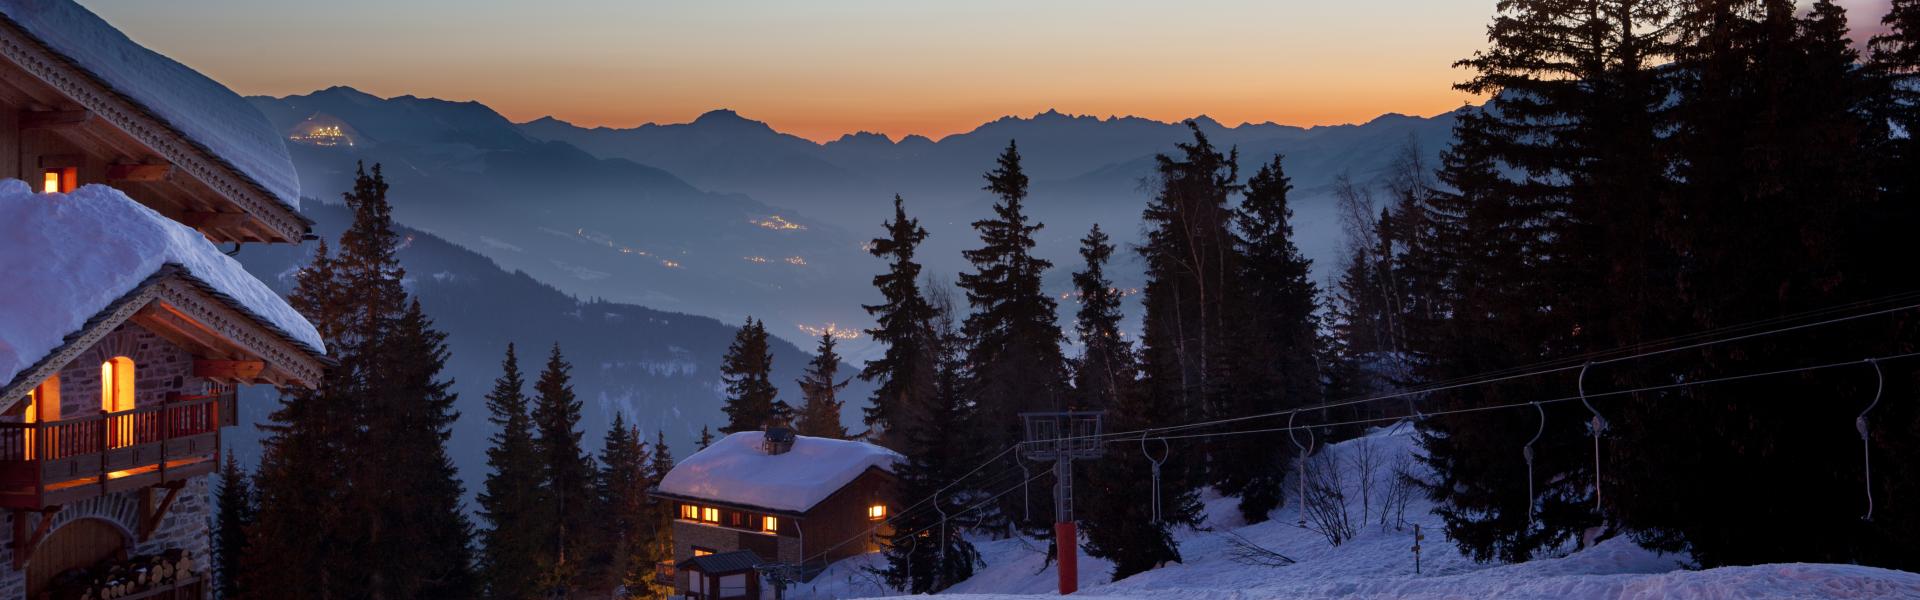 ski resort at dusk